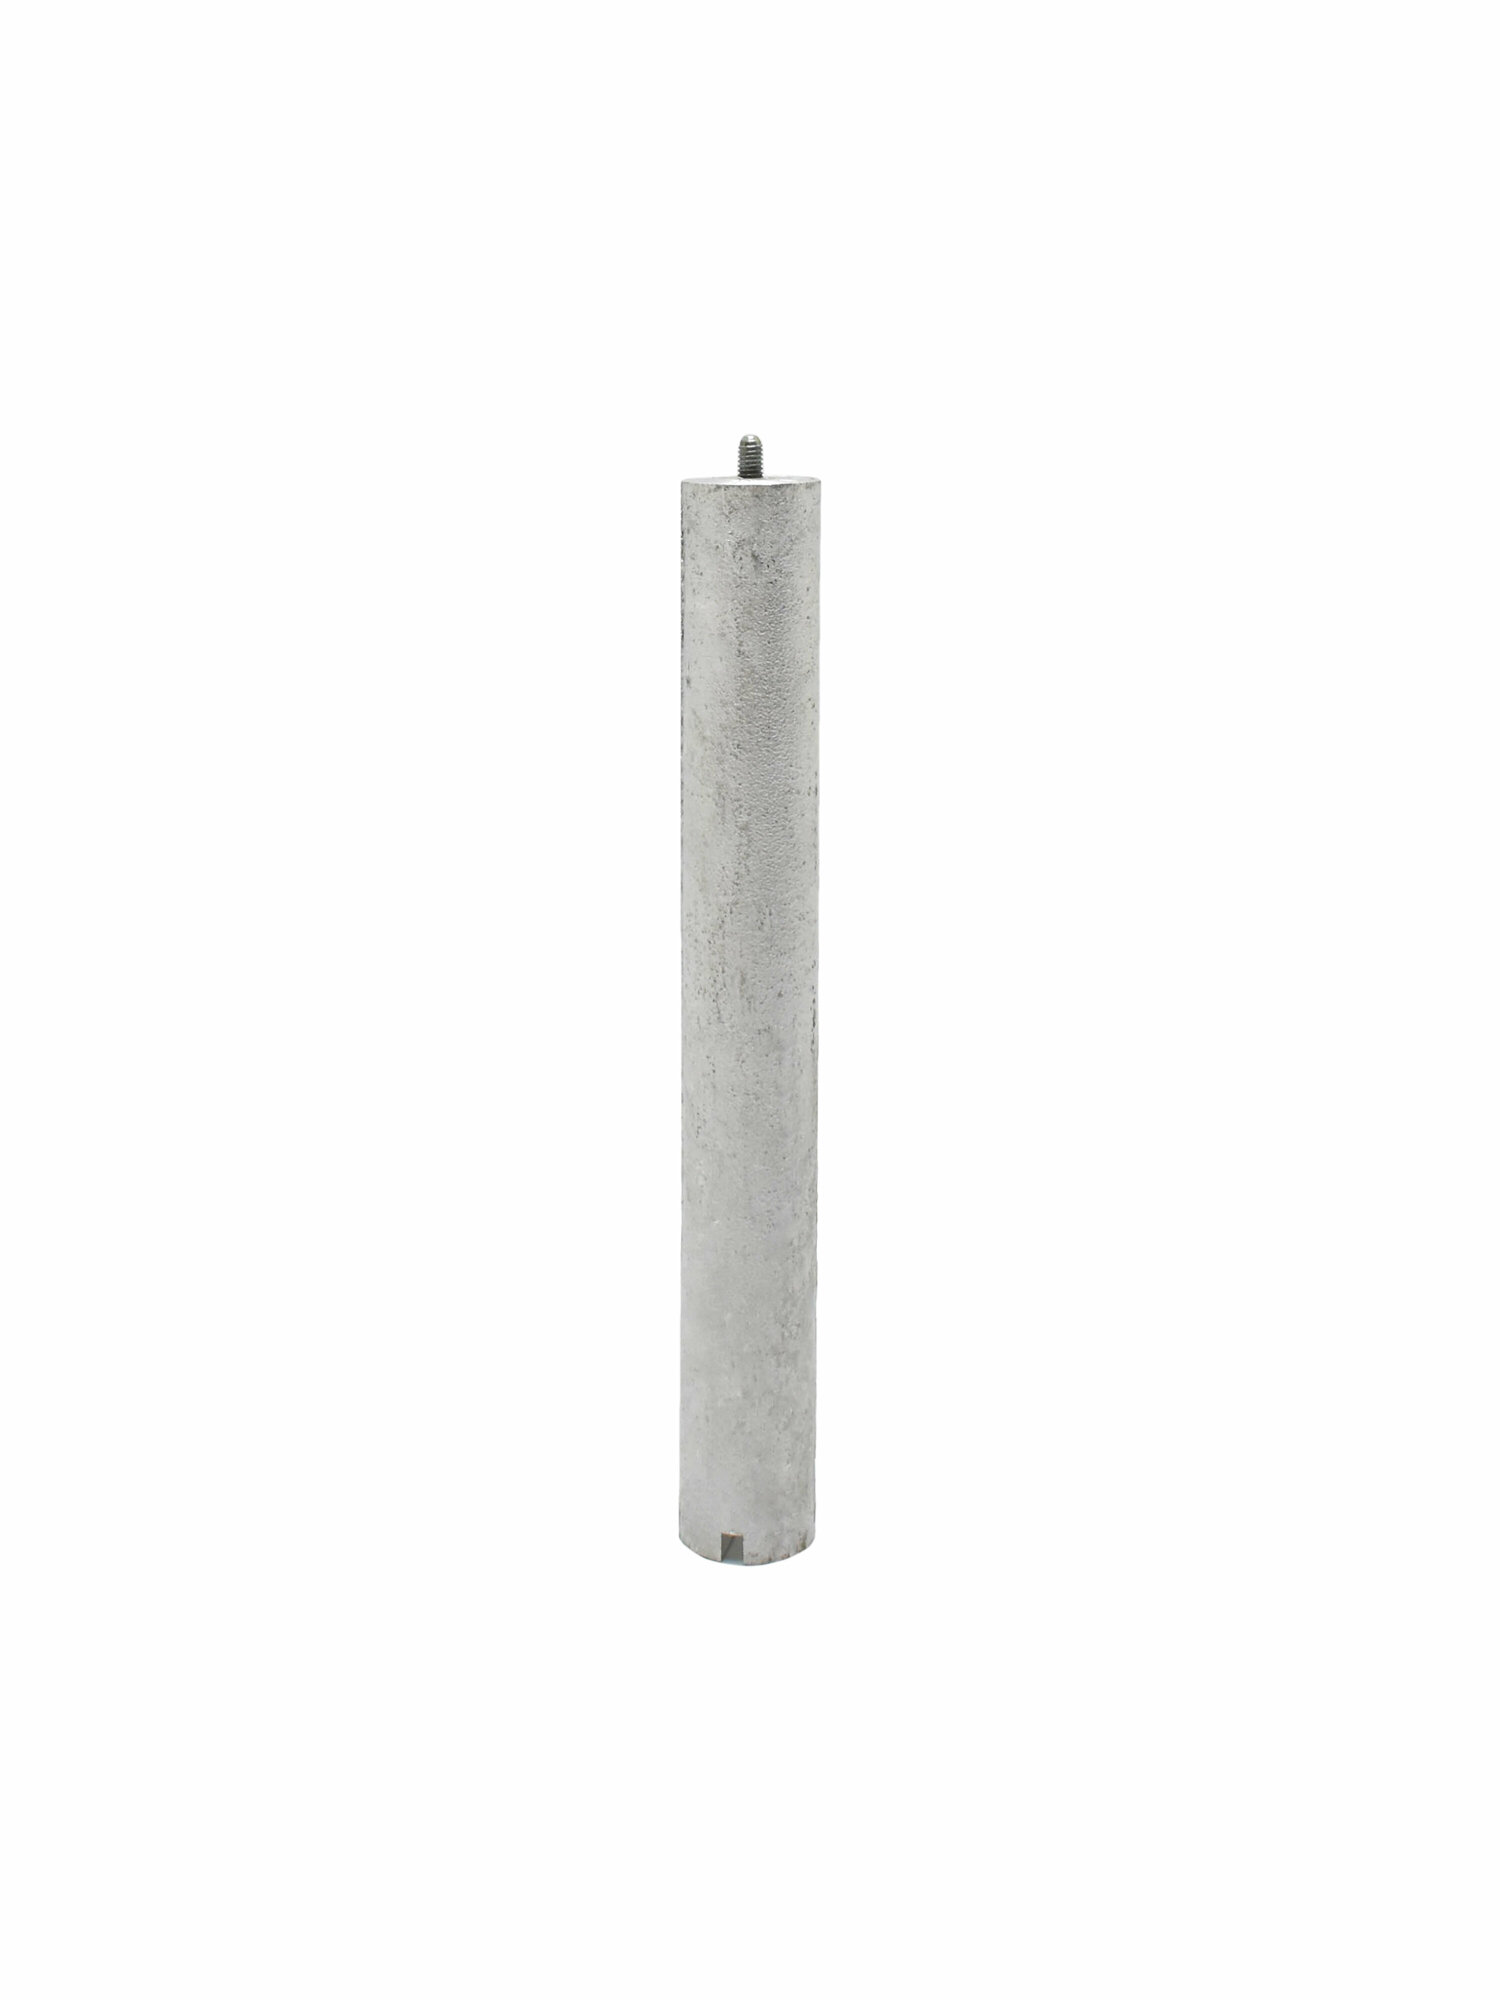 Анод М4 магниевый для водонагревателя, бойлера,20x160 M4x6